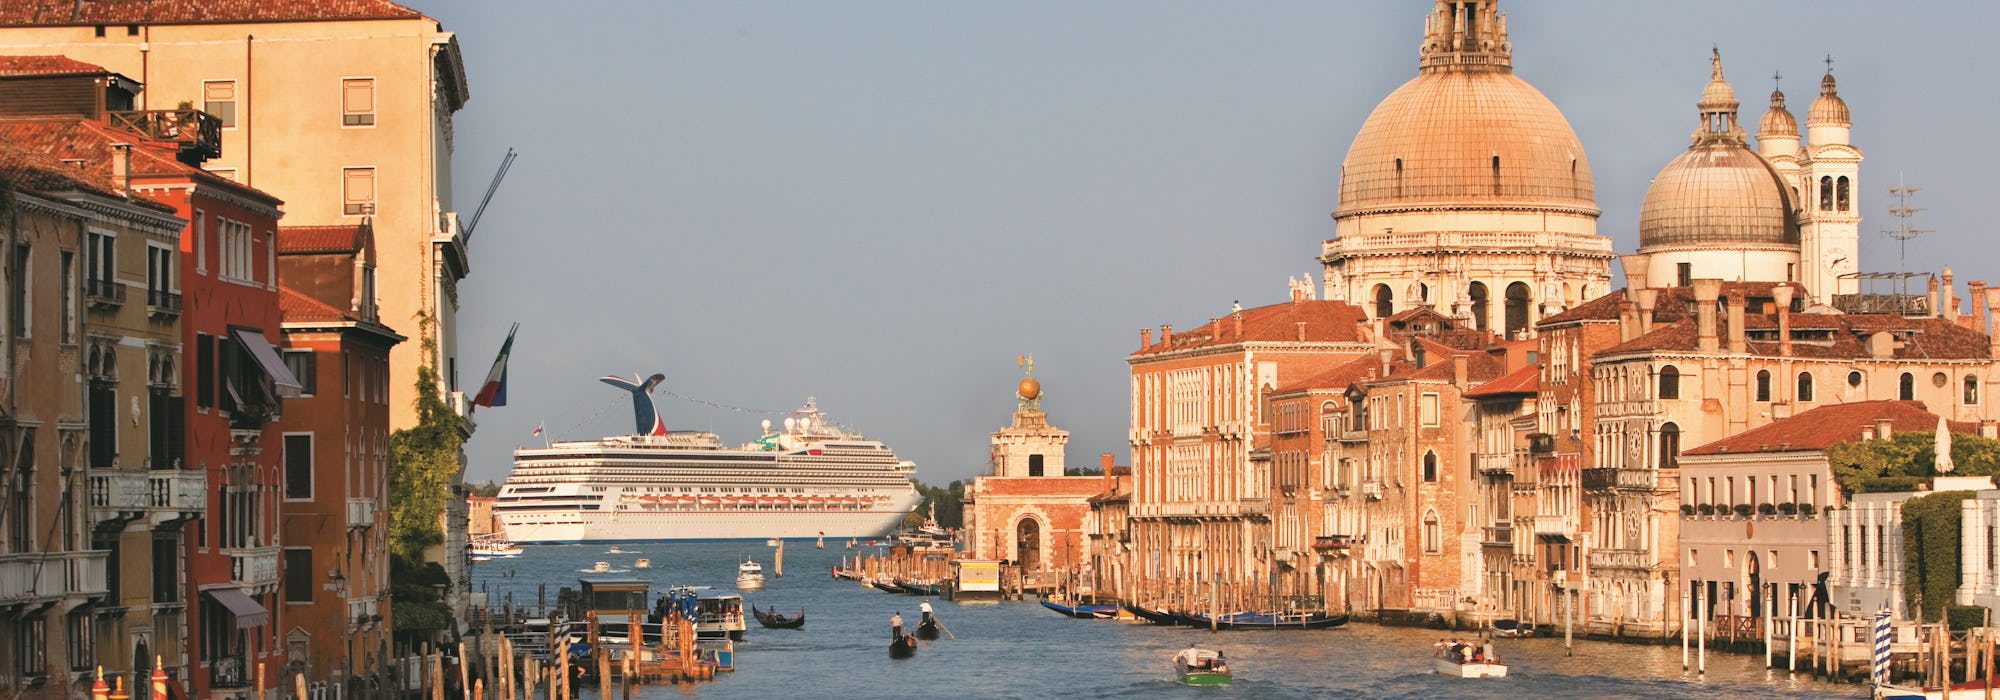 Fartyget Carnival Liberty kryssar fram utanför Venedig. På bilden syns vackra byggnader och gondoler.